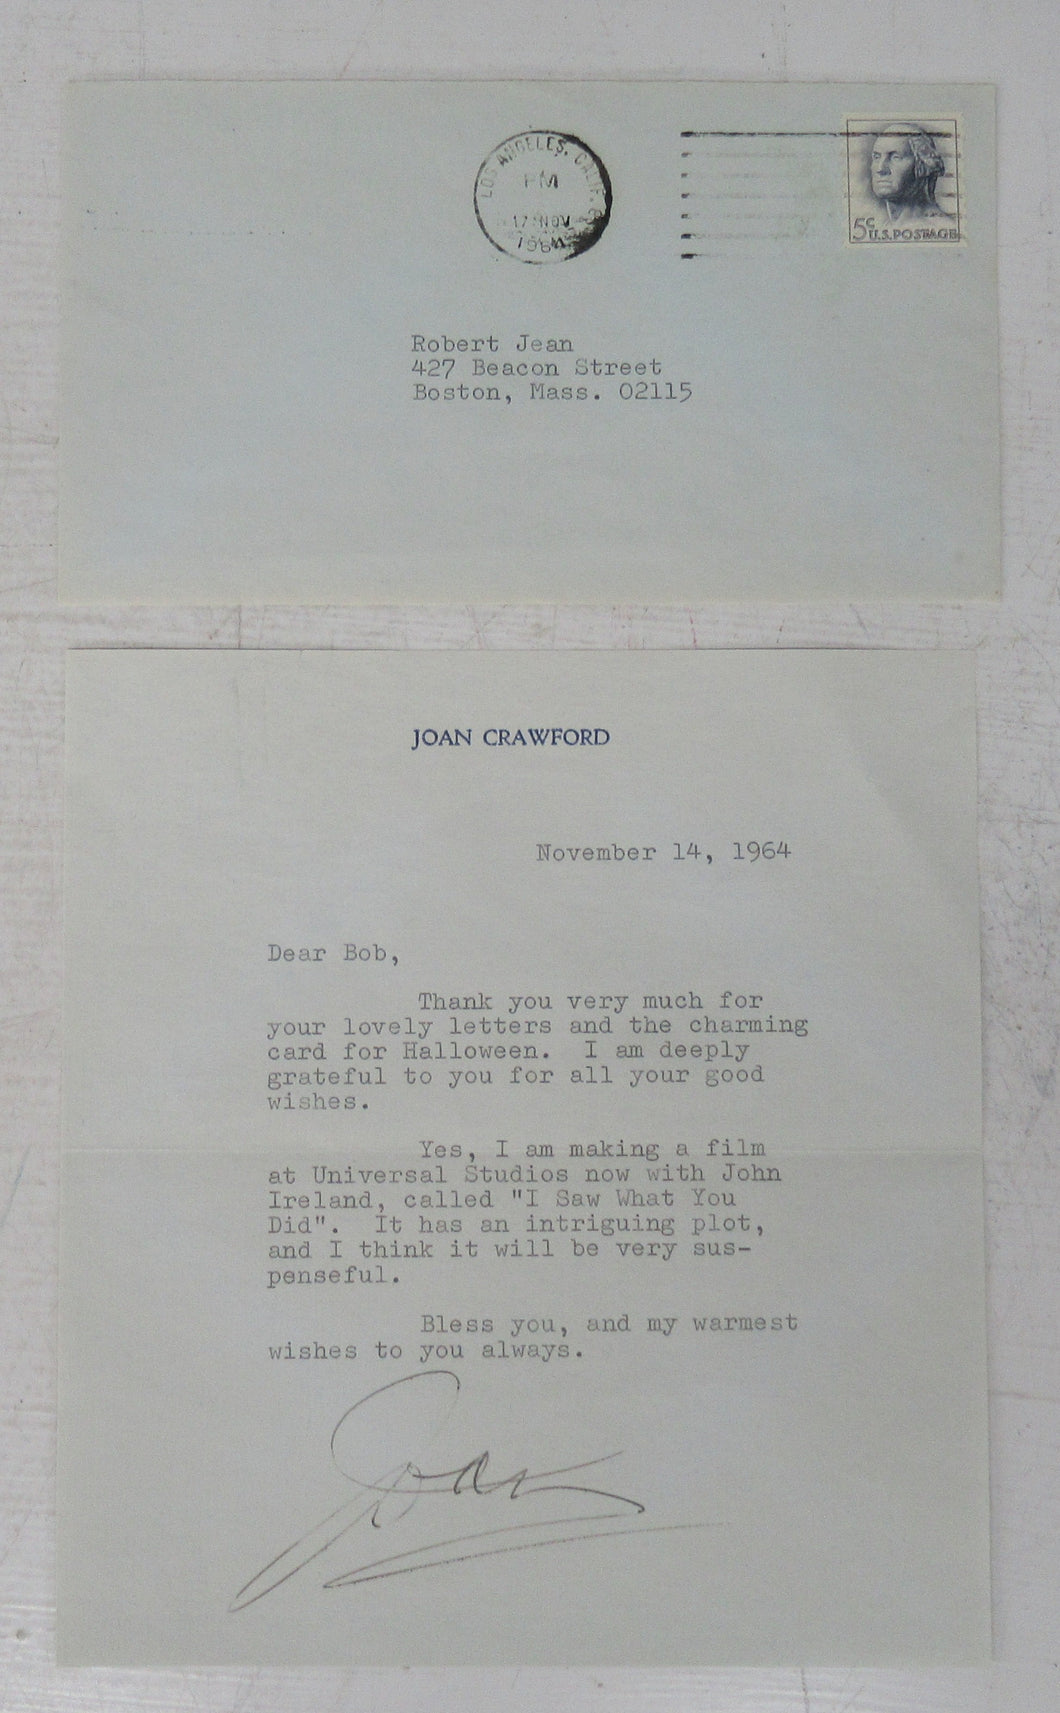 Letter to Robert Jean, November 14, 1964